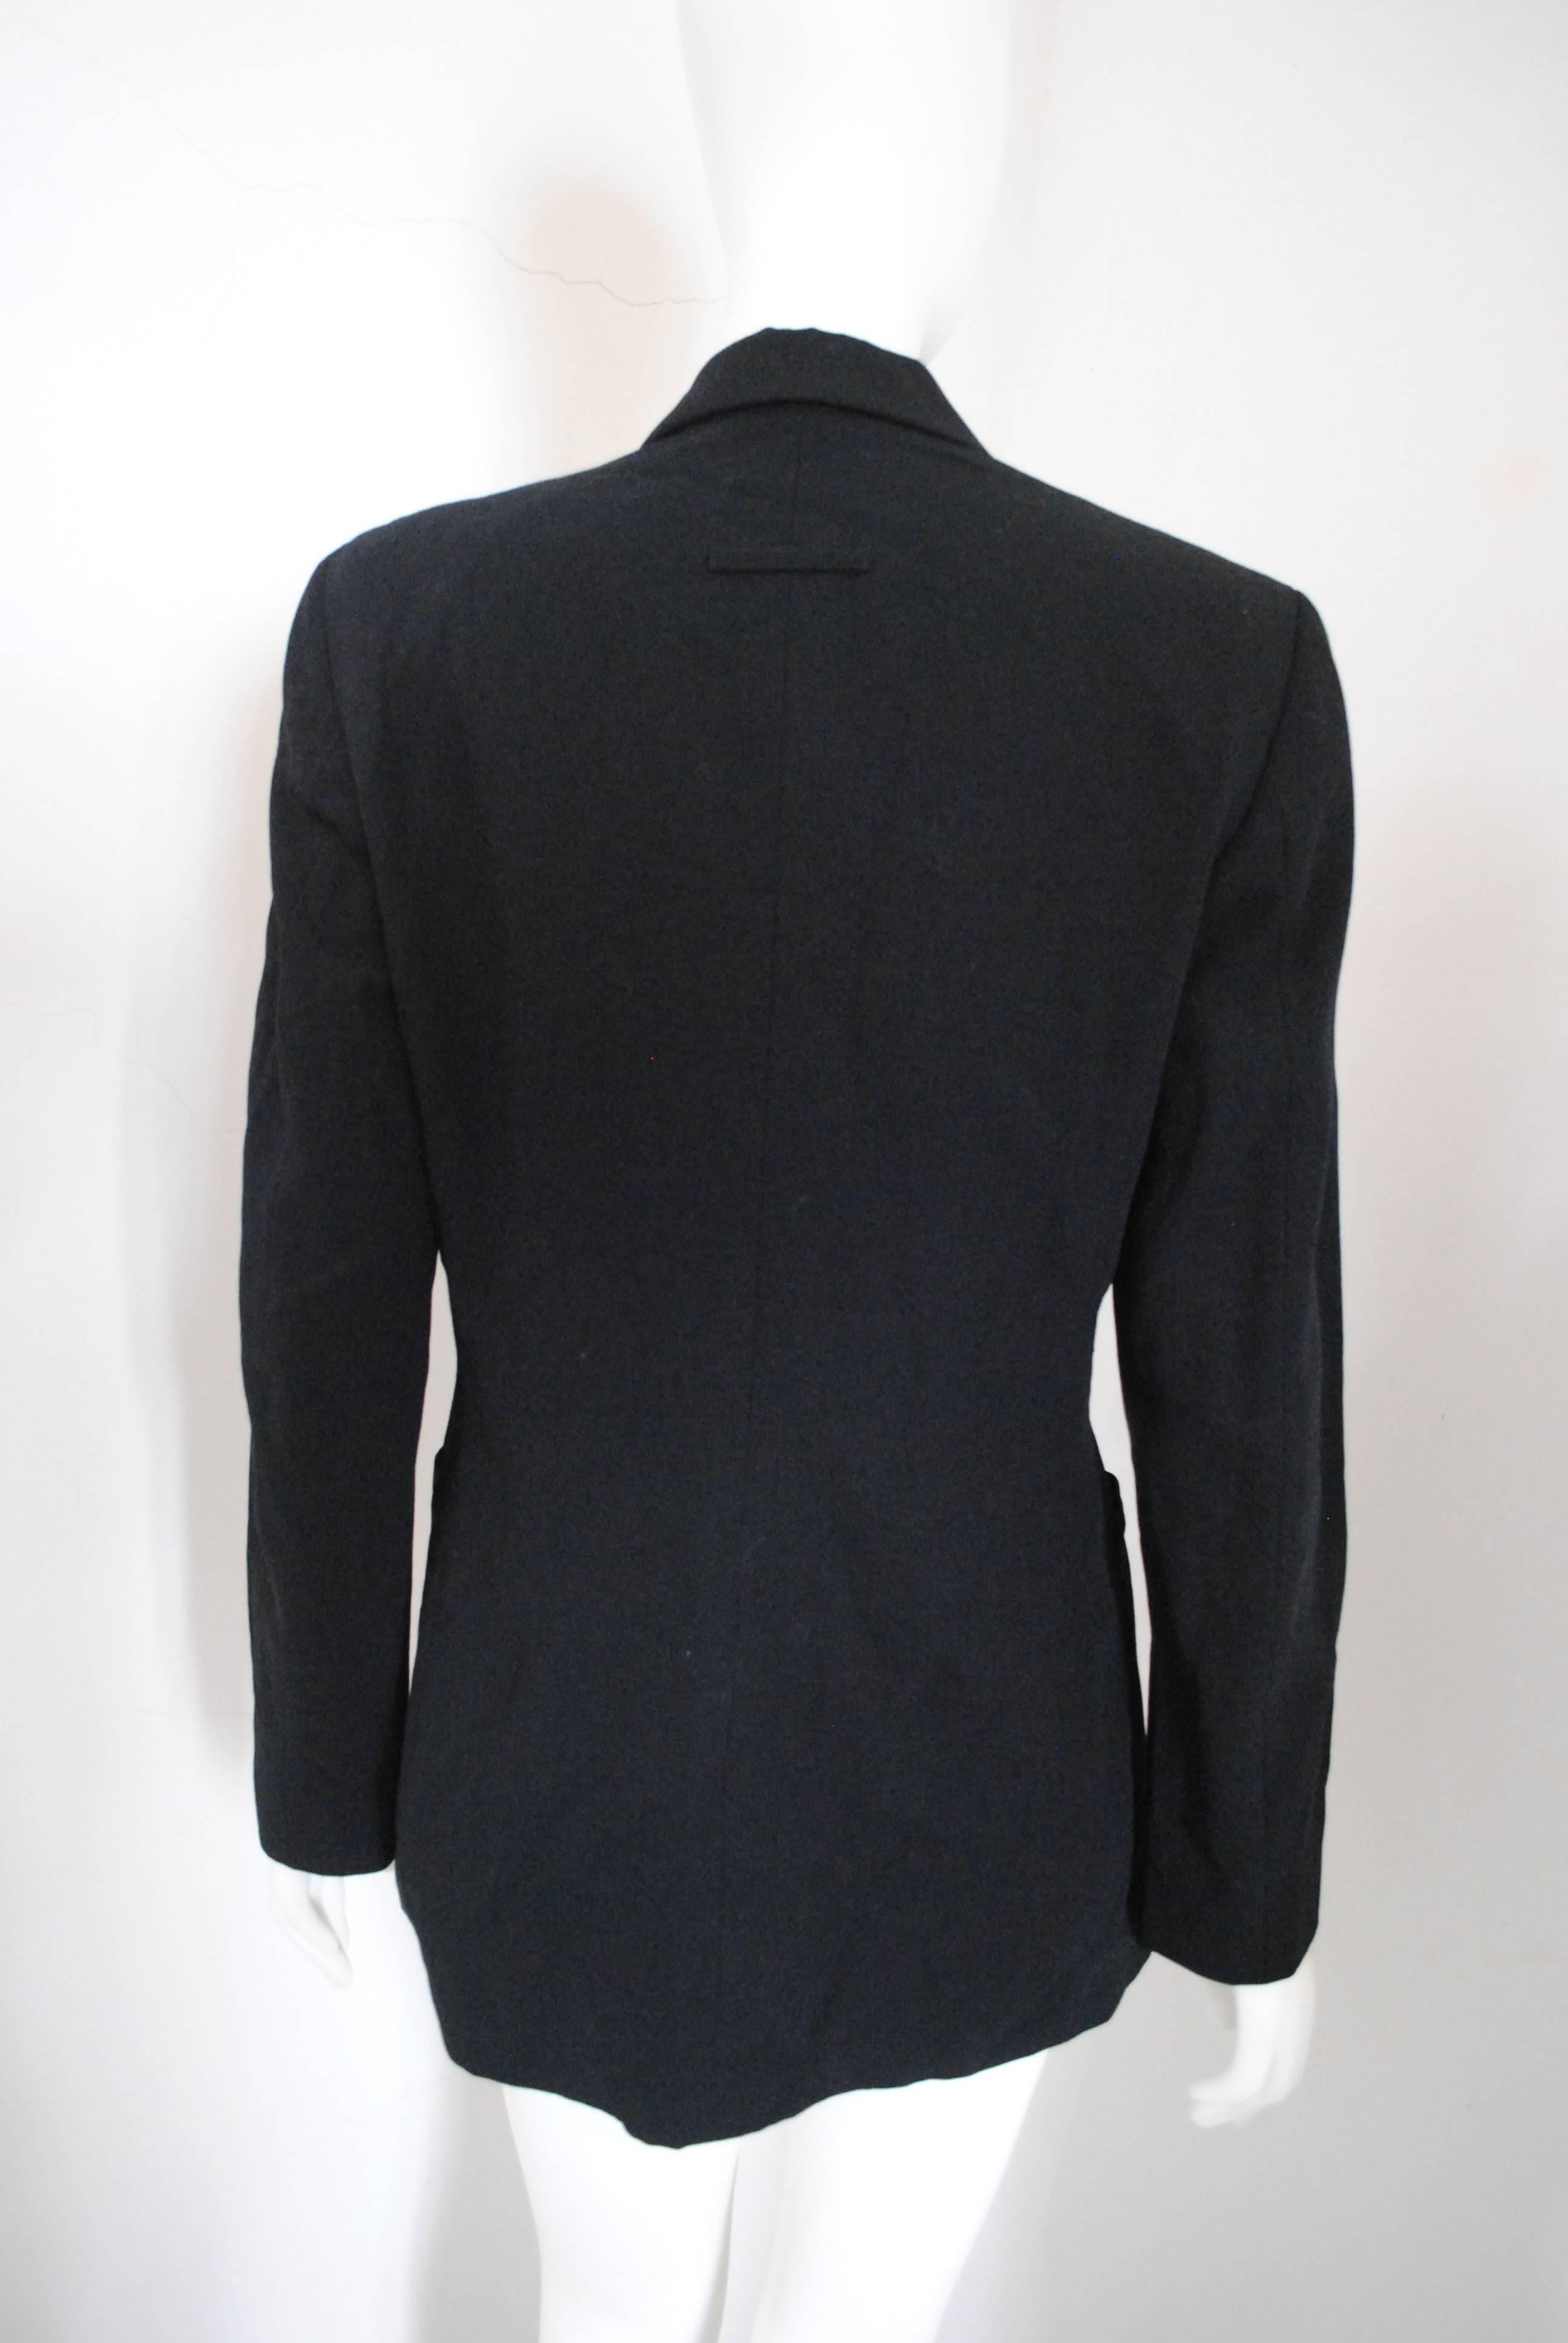 1997 - 1998 Rare Jean Paul Gaultier Black Wool Jacket 2